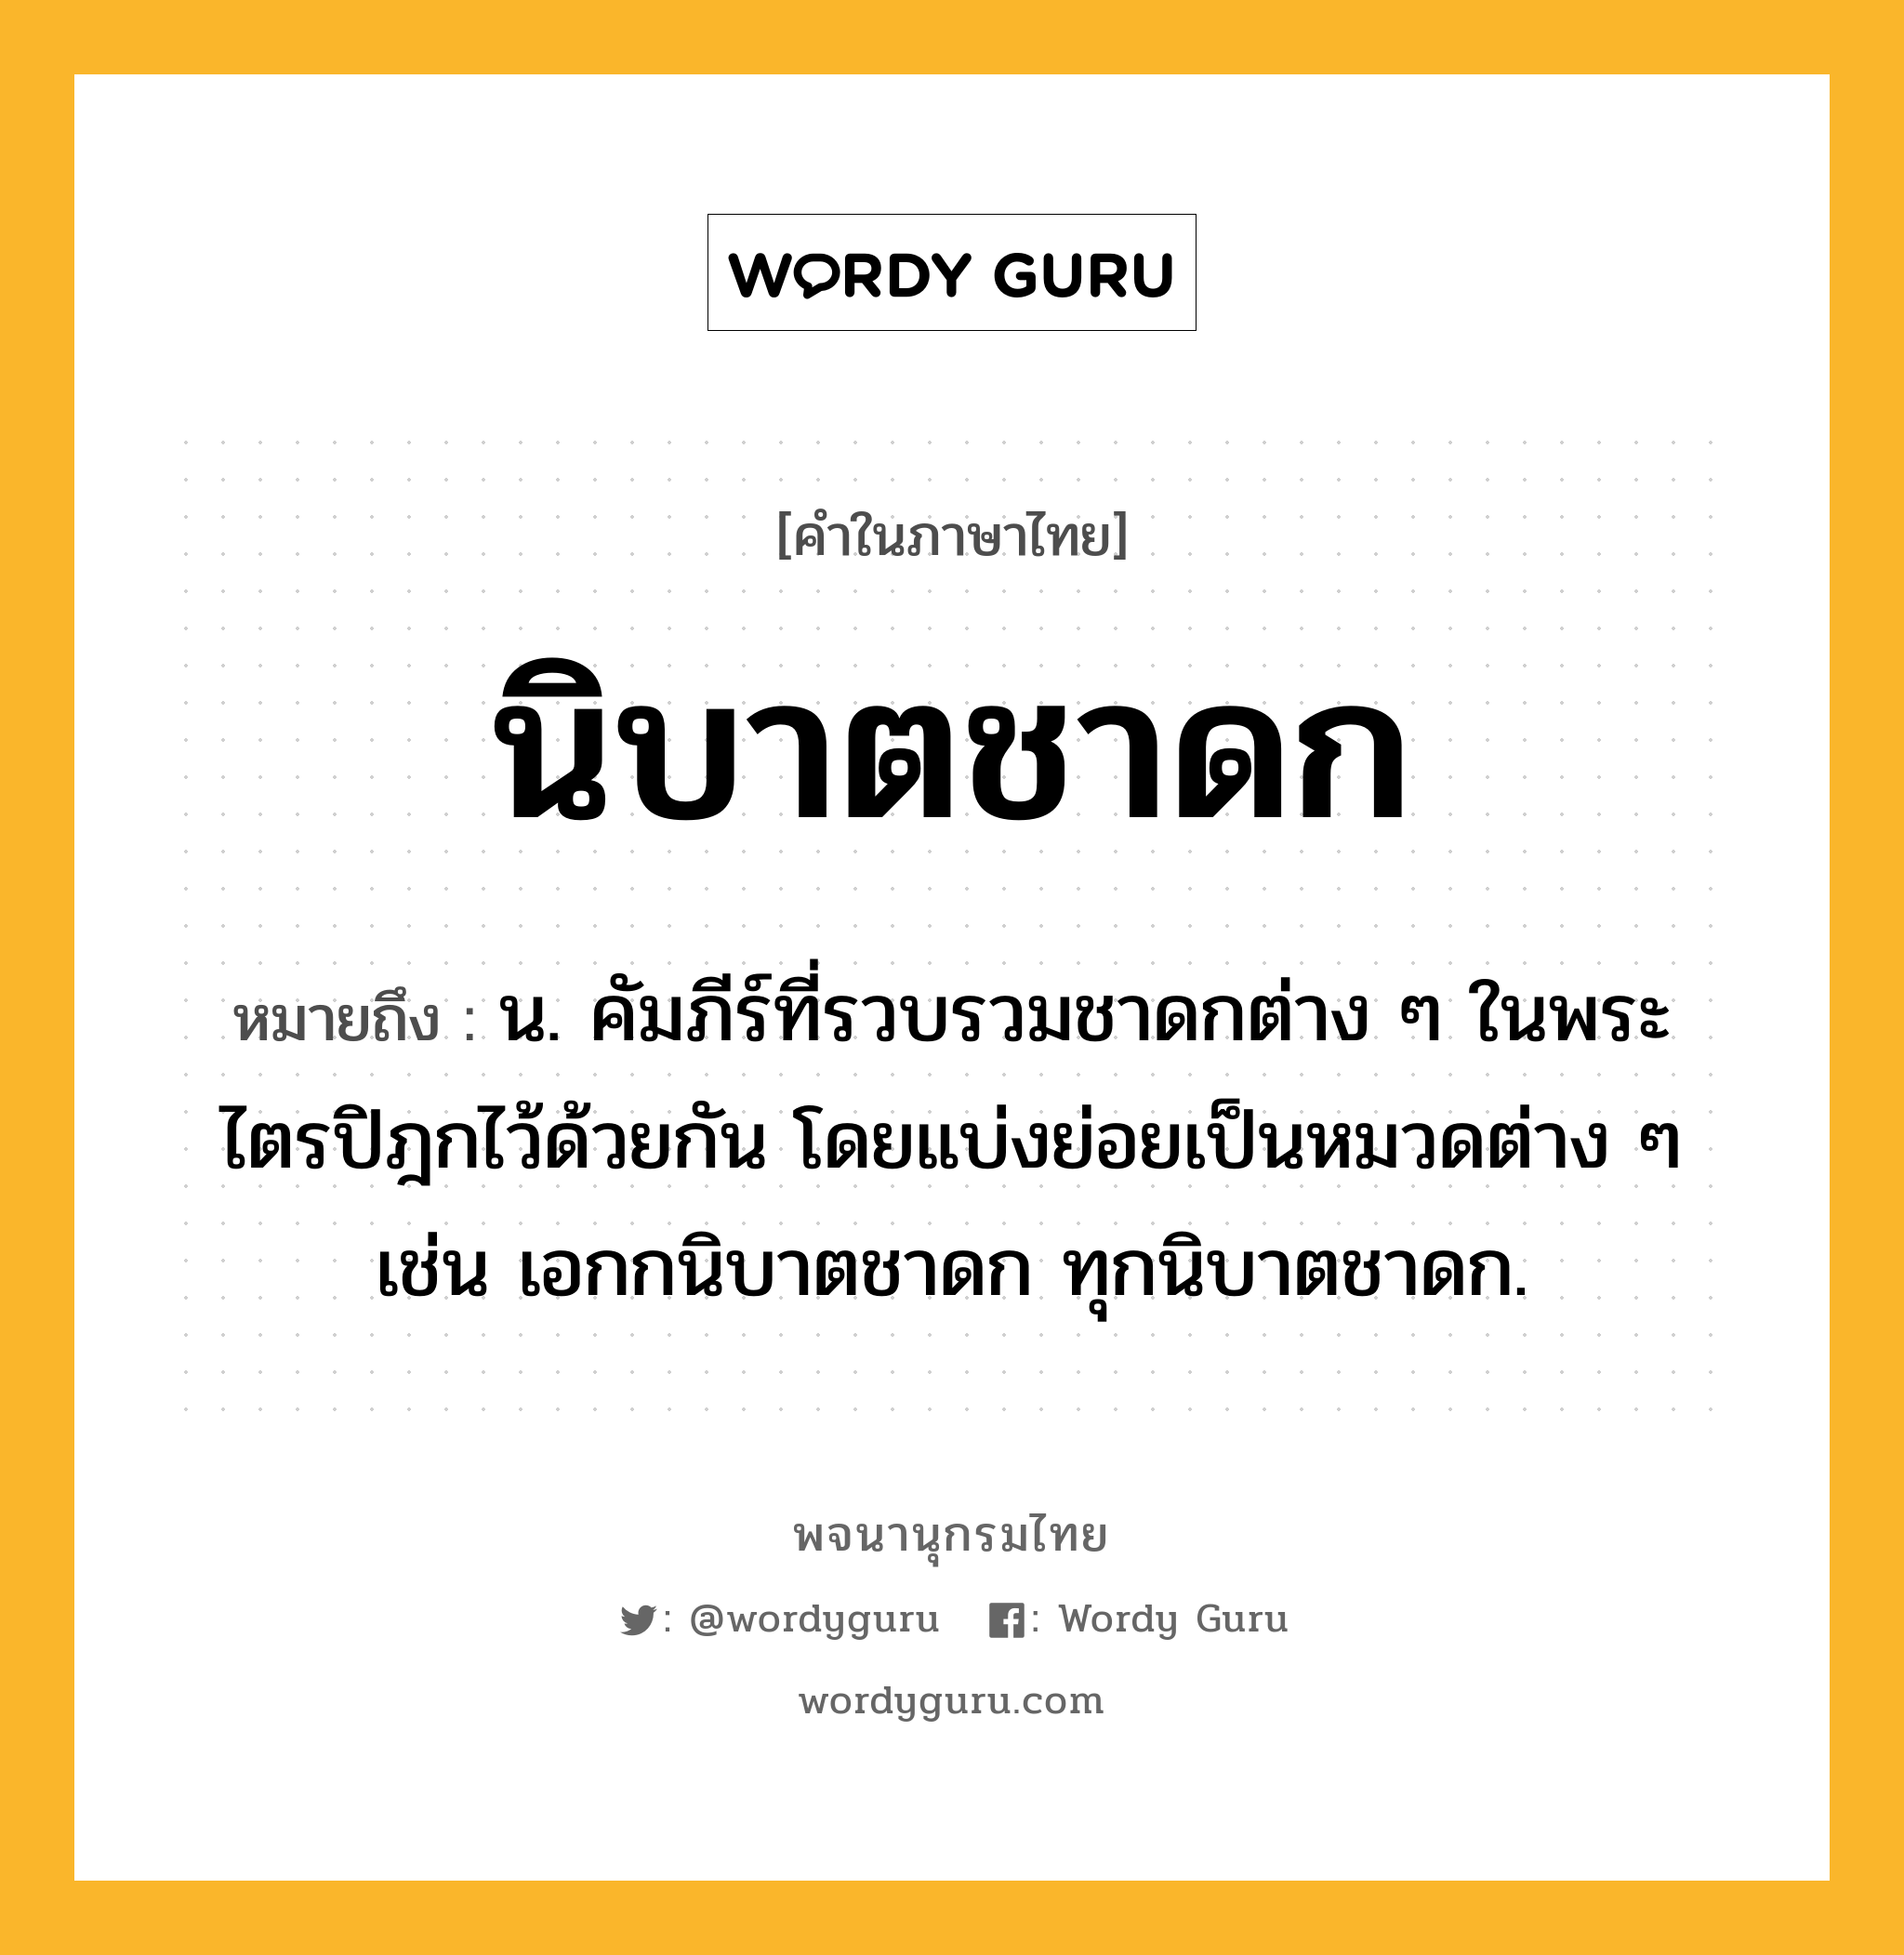 นิบาตชาดก ความหมาย หมายถึงอะไร?, คำในภาษาไทย นิบาตชาดก หมายถึง น. คัมภีร์ที่รวบรวมชาดกต่าง ๆ ในพระไตรปิฎกไว้ด้วยกัน โดยแบ่งย่อยเป็นหมวดต่าง ๆ เช่น เอกกนิบาตชาดก ทุกนิบาตชาดก.